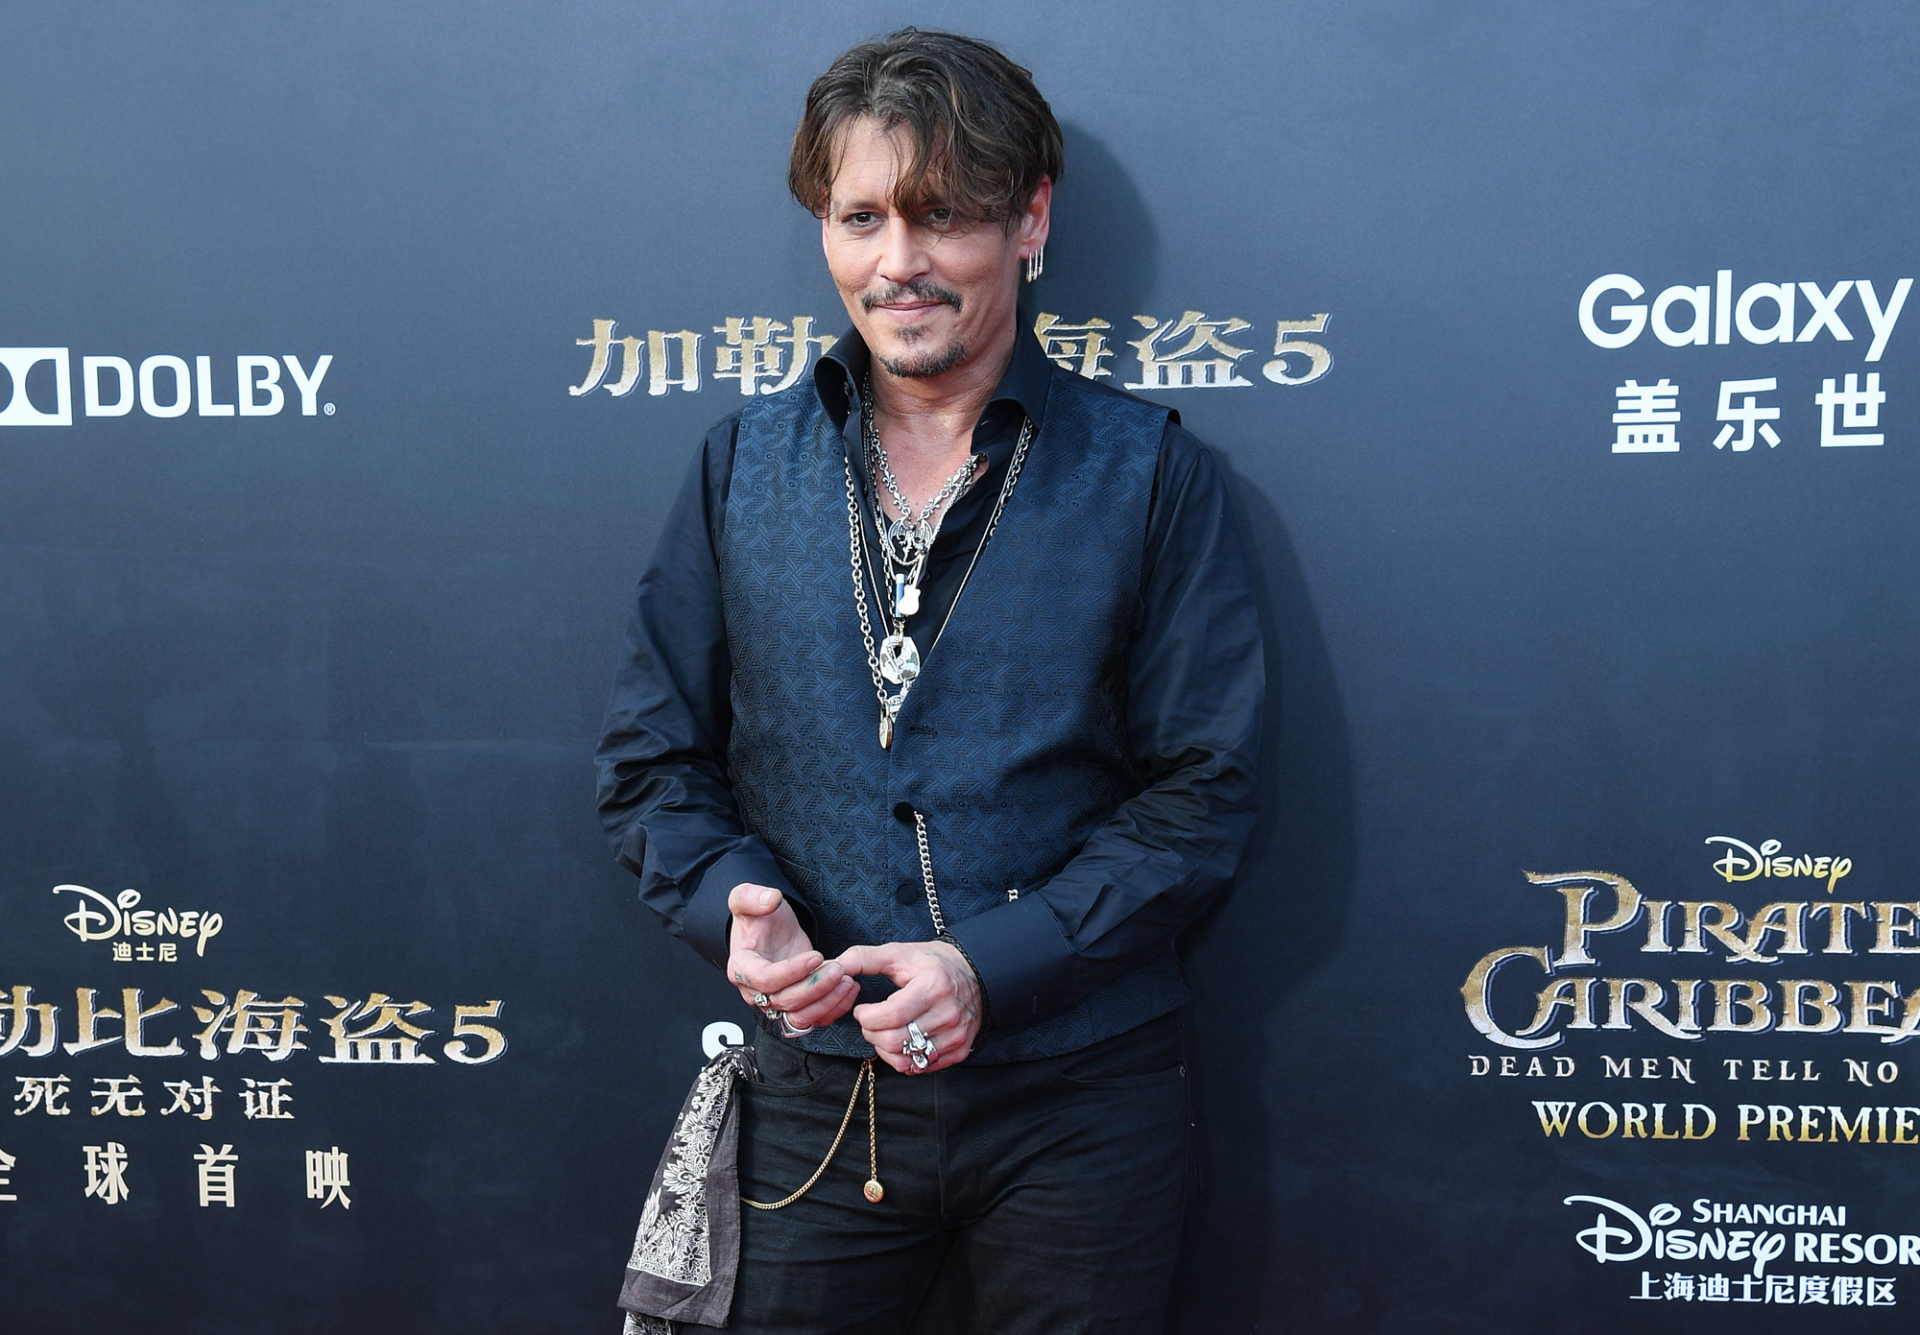 Johnny Depp eljótékonykodja az Amber Heard által fizetett kártérítést